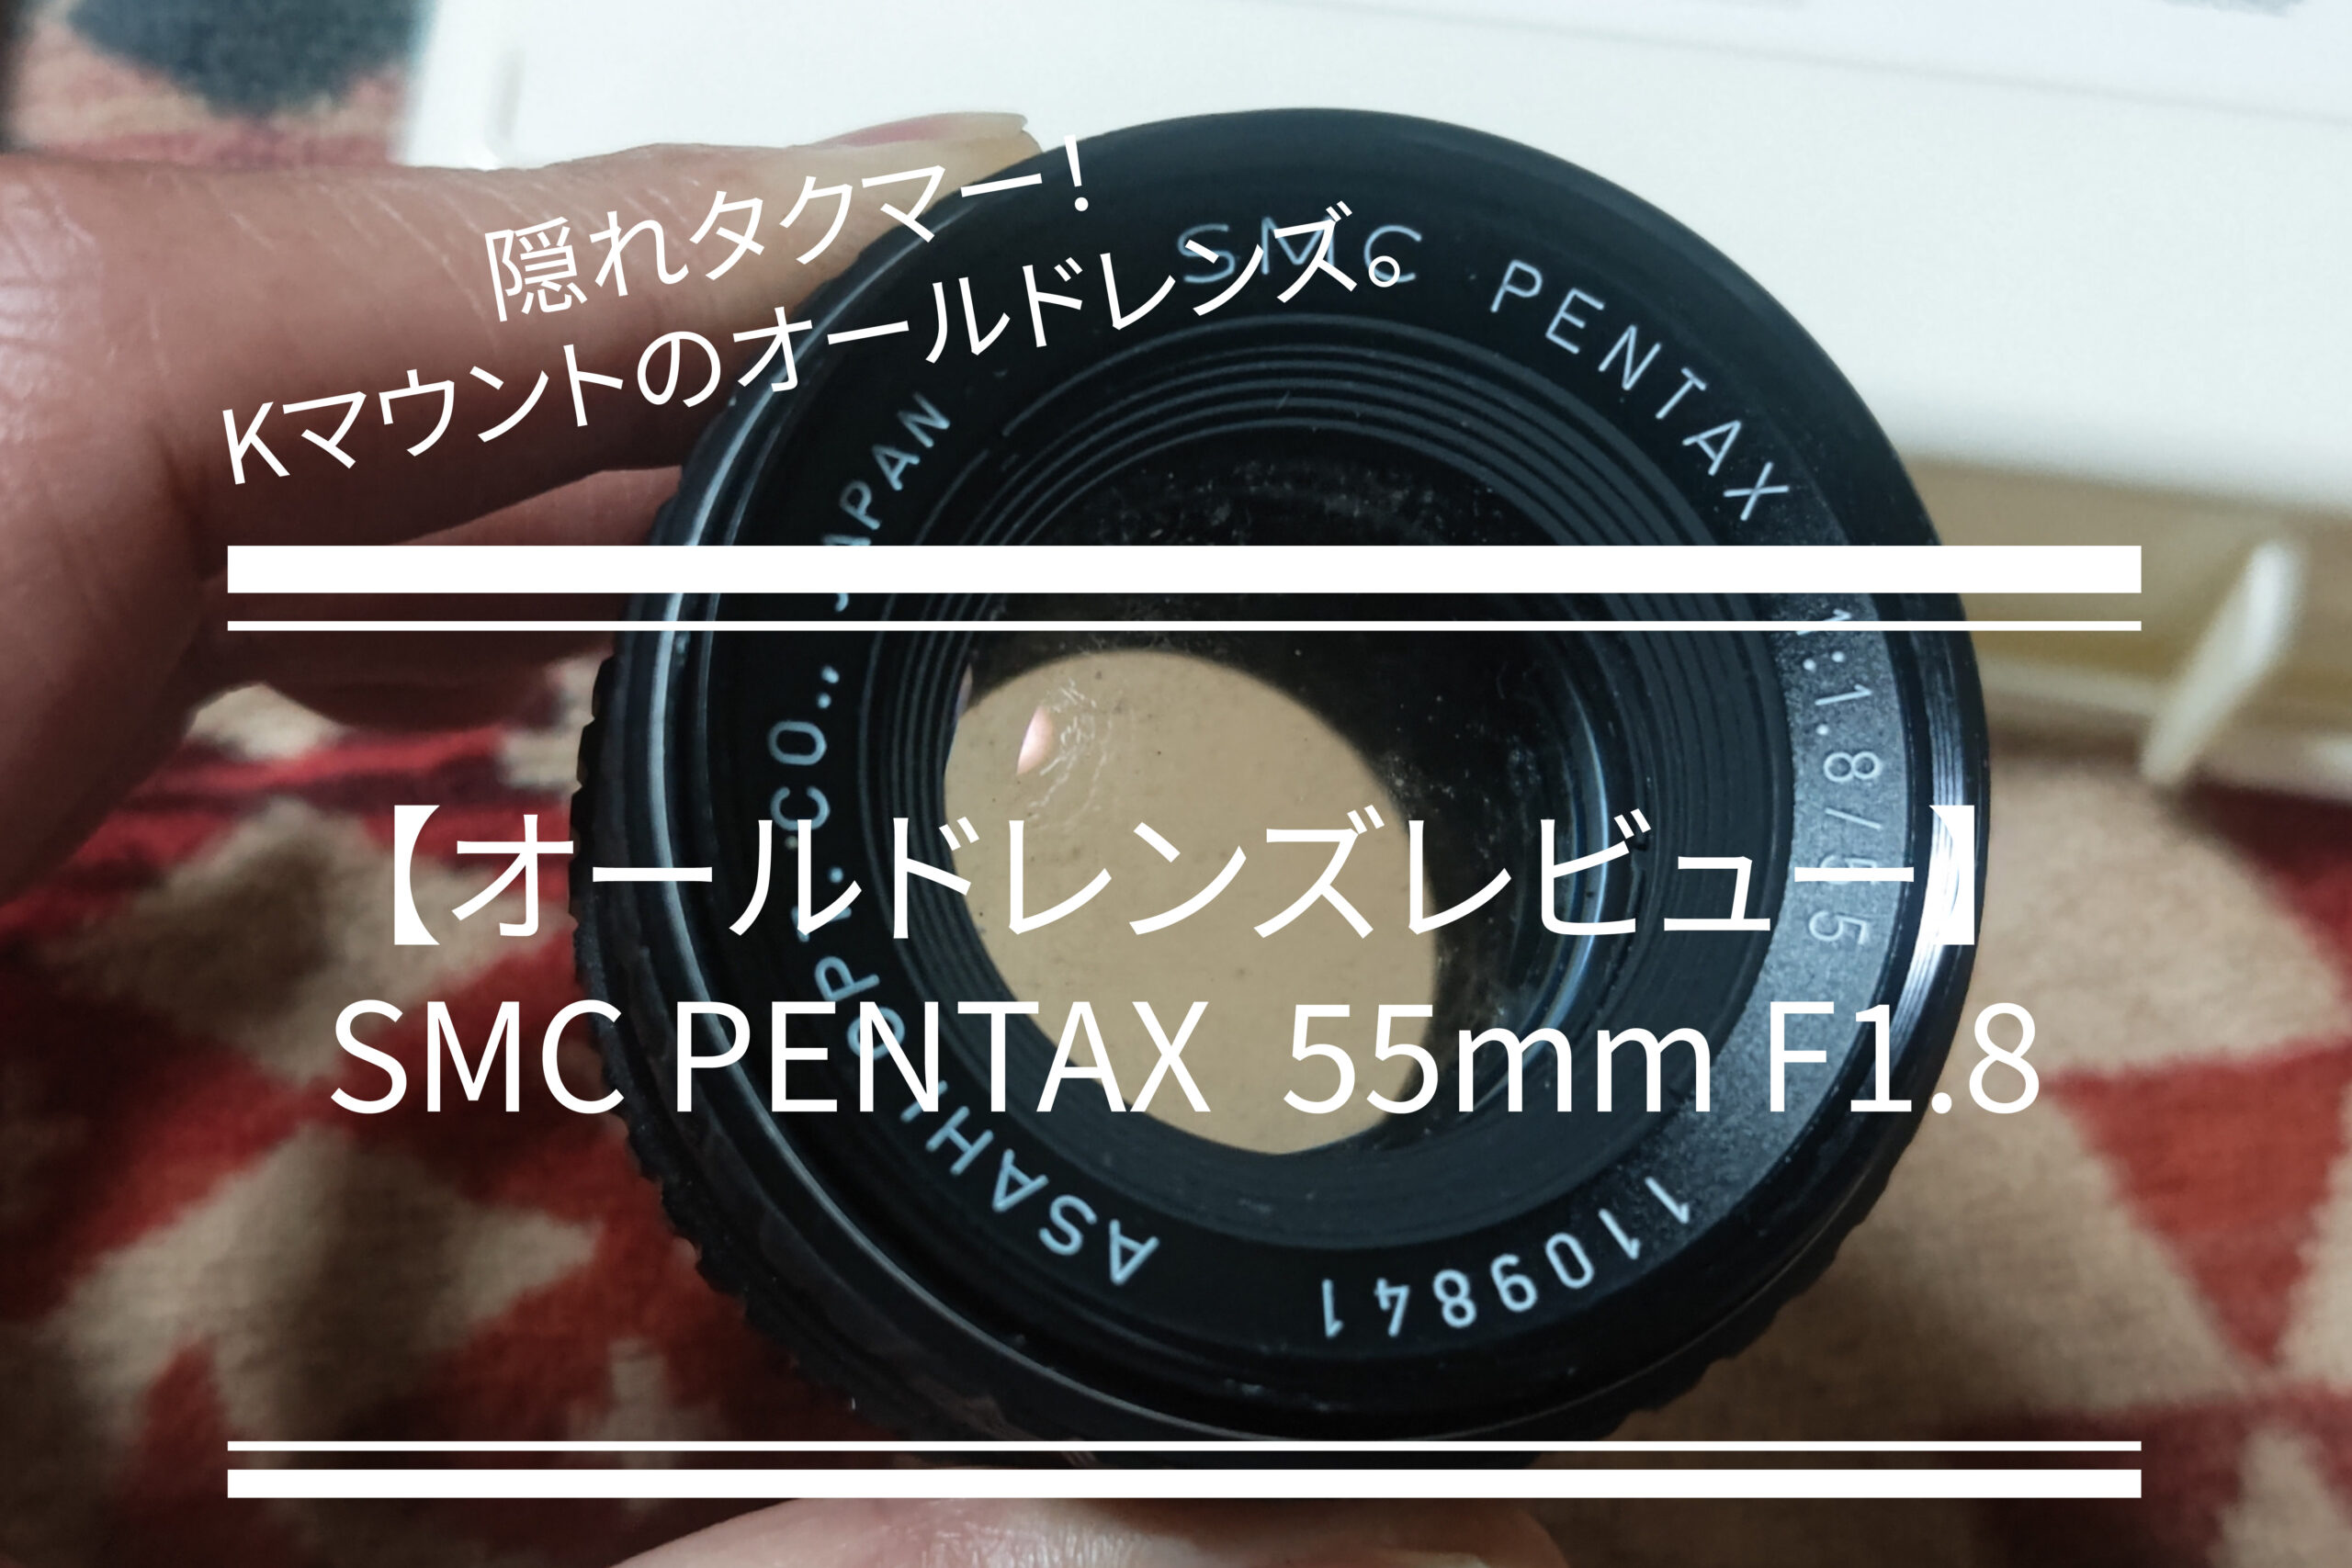 オールドレンズレビュー4】SMC PENTAX 55mm F1.8特徴/作例 - PHOTOWALK 